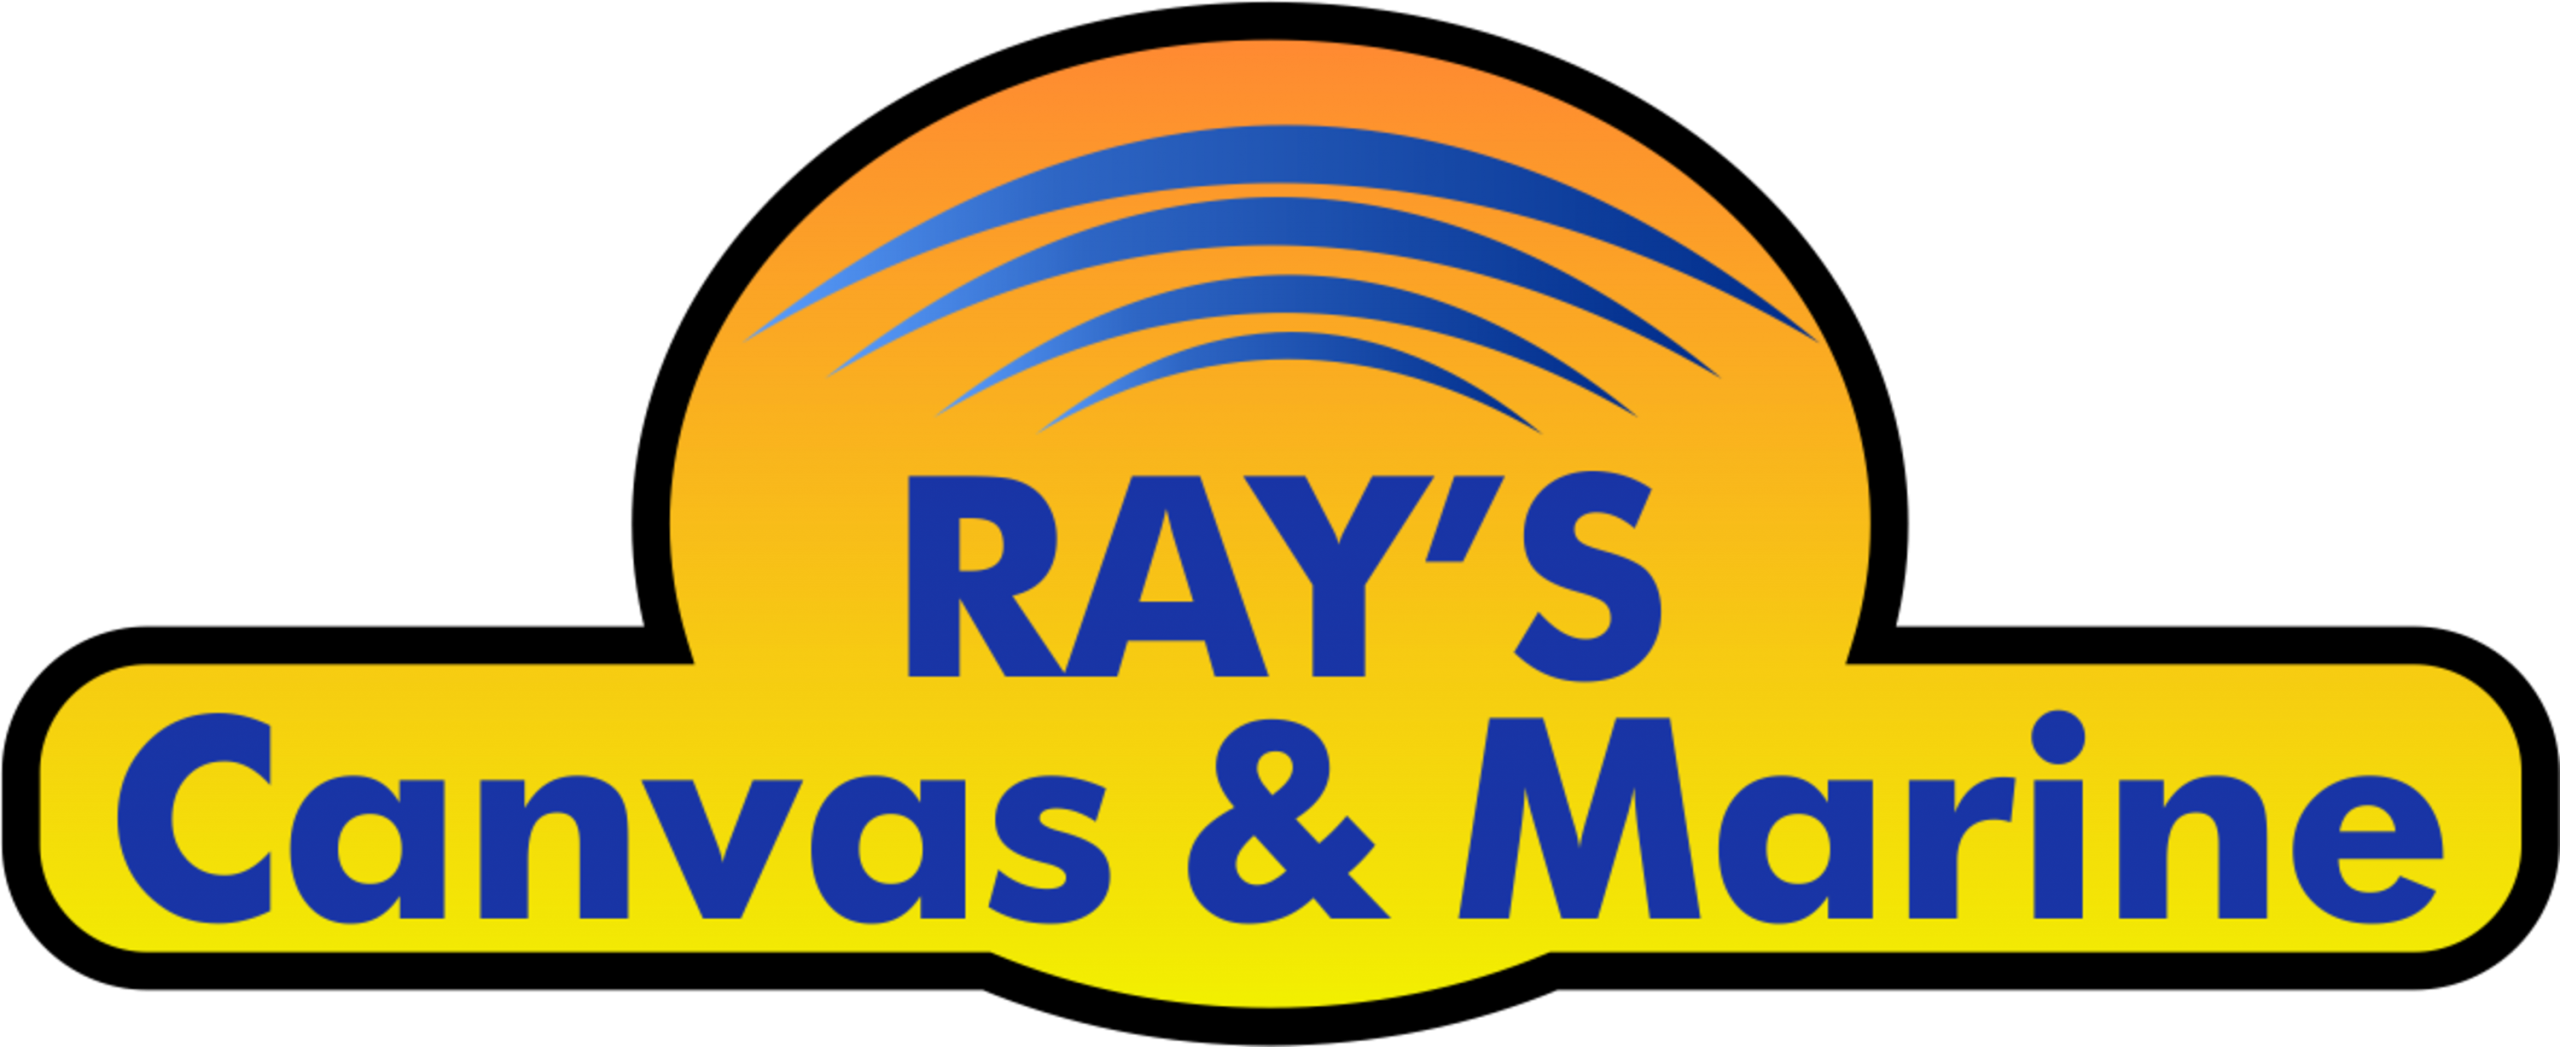 Ray's Canvas & marine